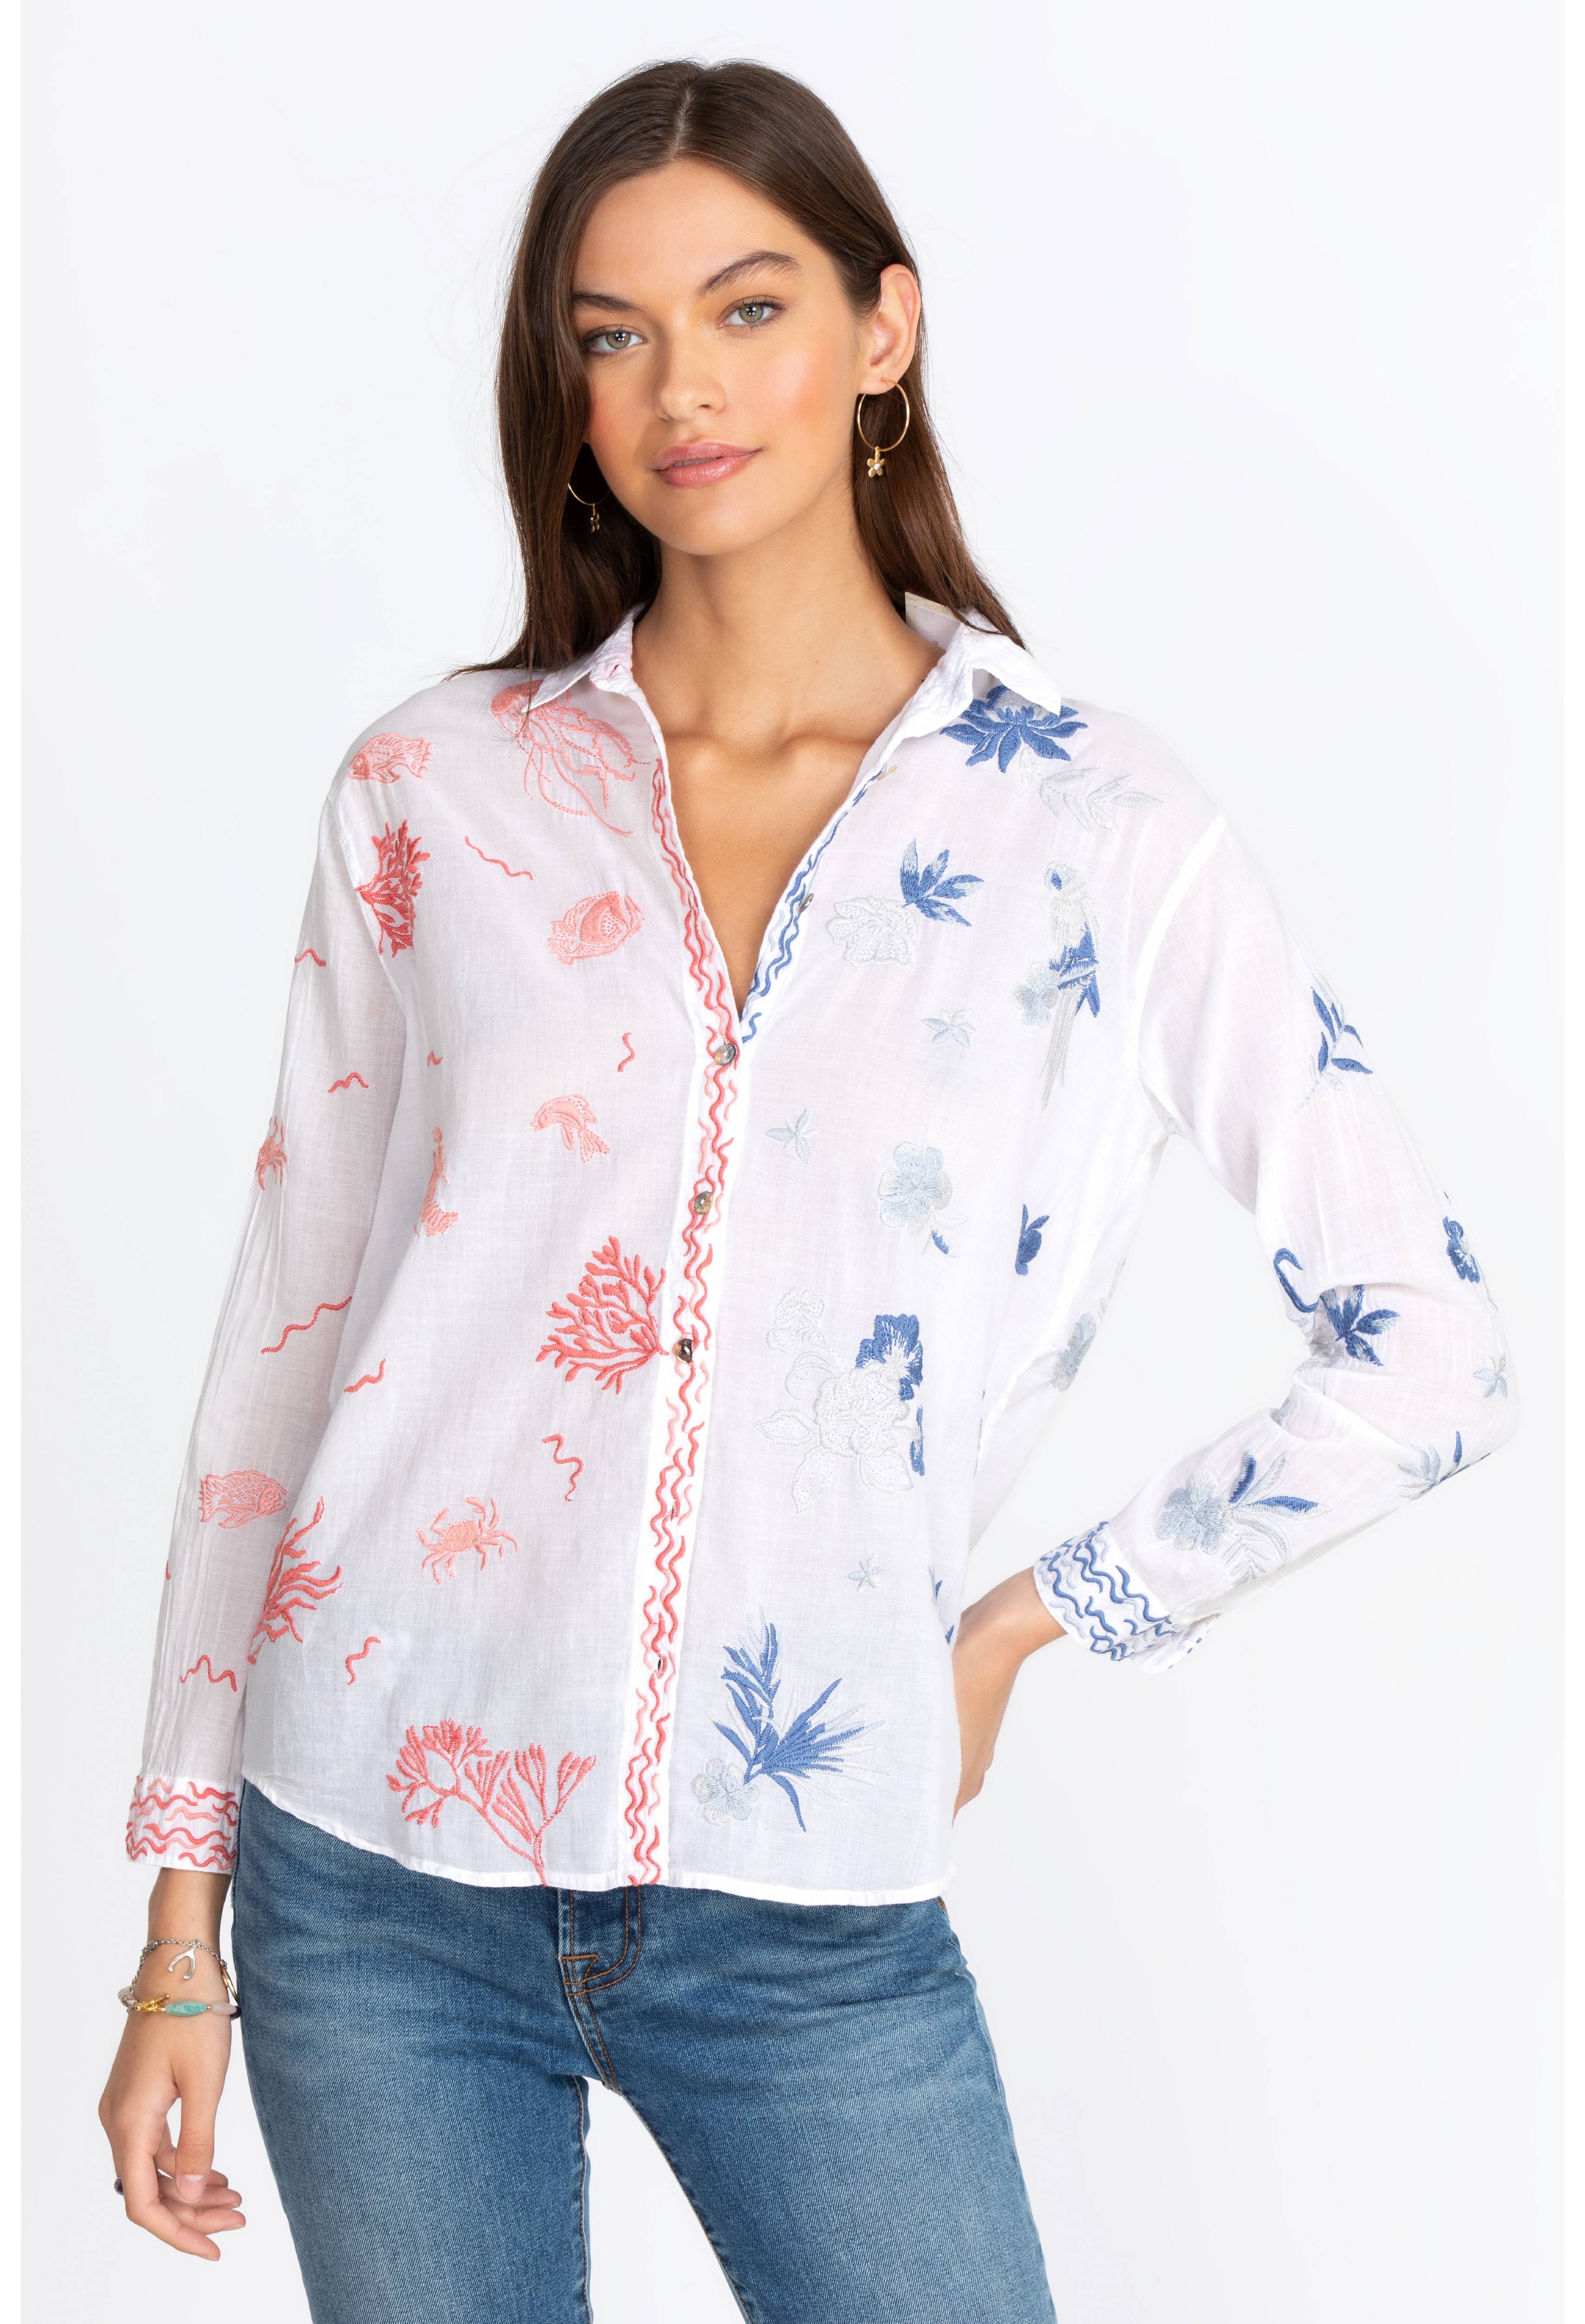 Marbella Oversized Shirt, , large image number 1